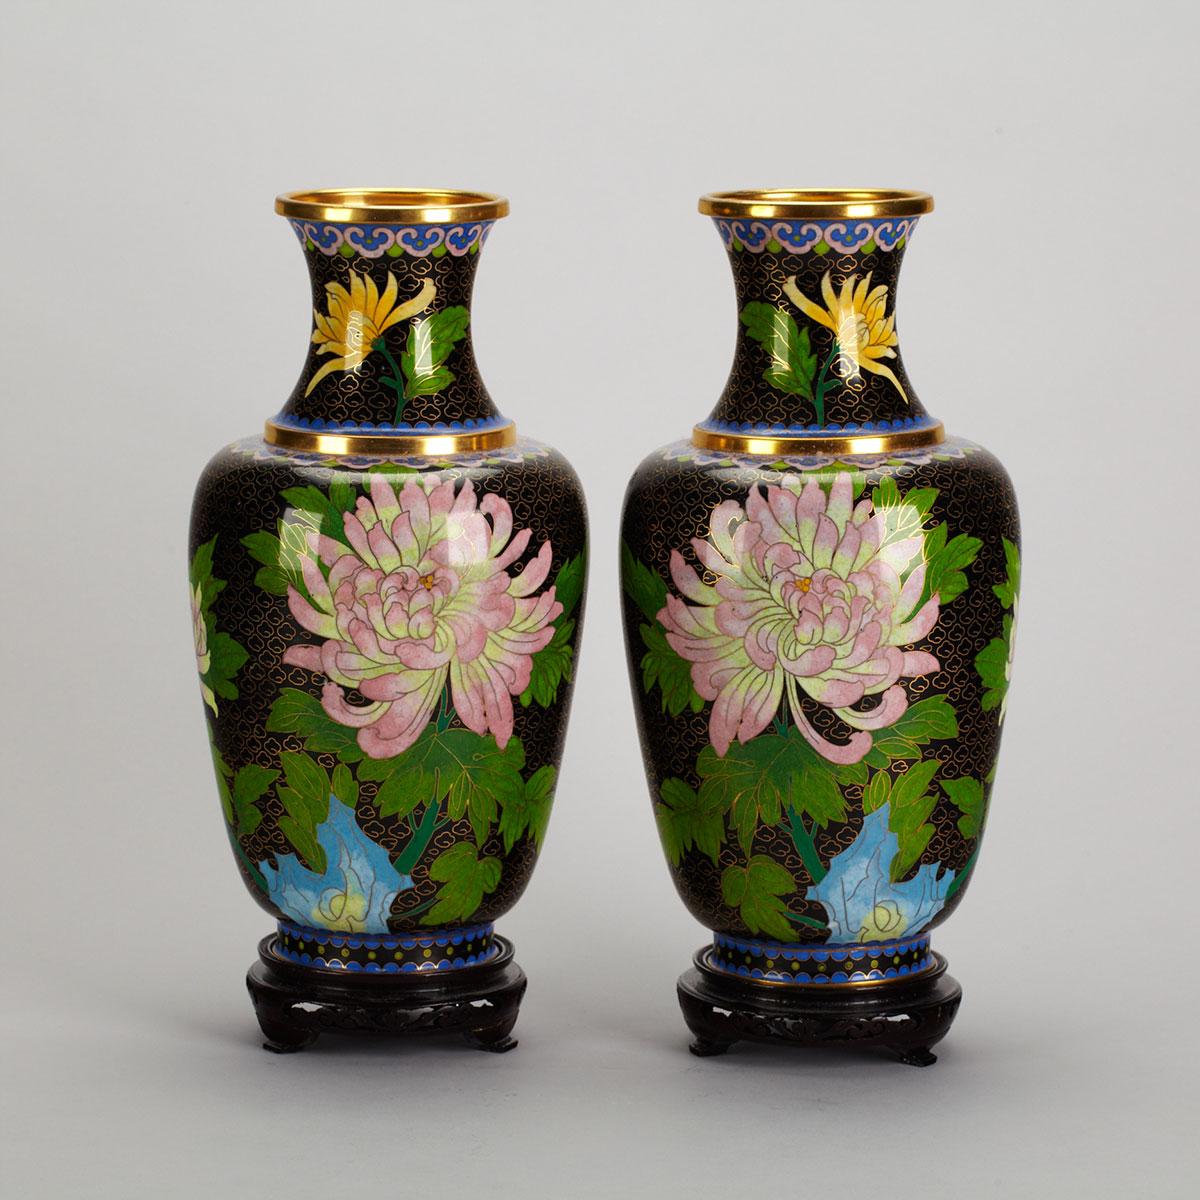 Pair of Cloisonné Enamel Floral Vases